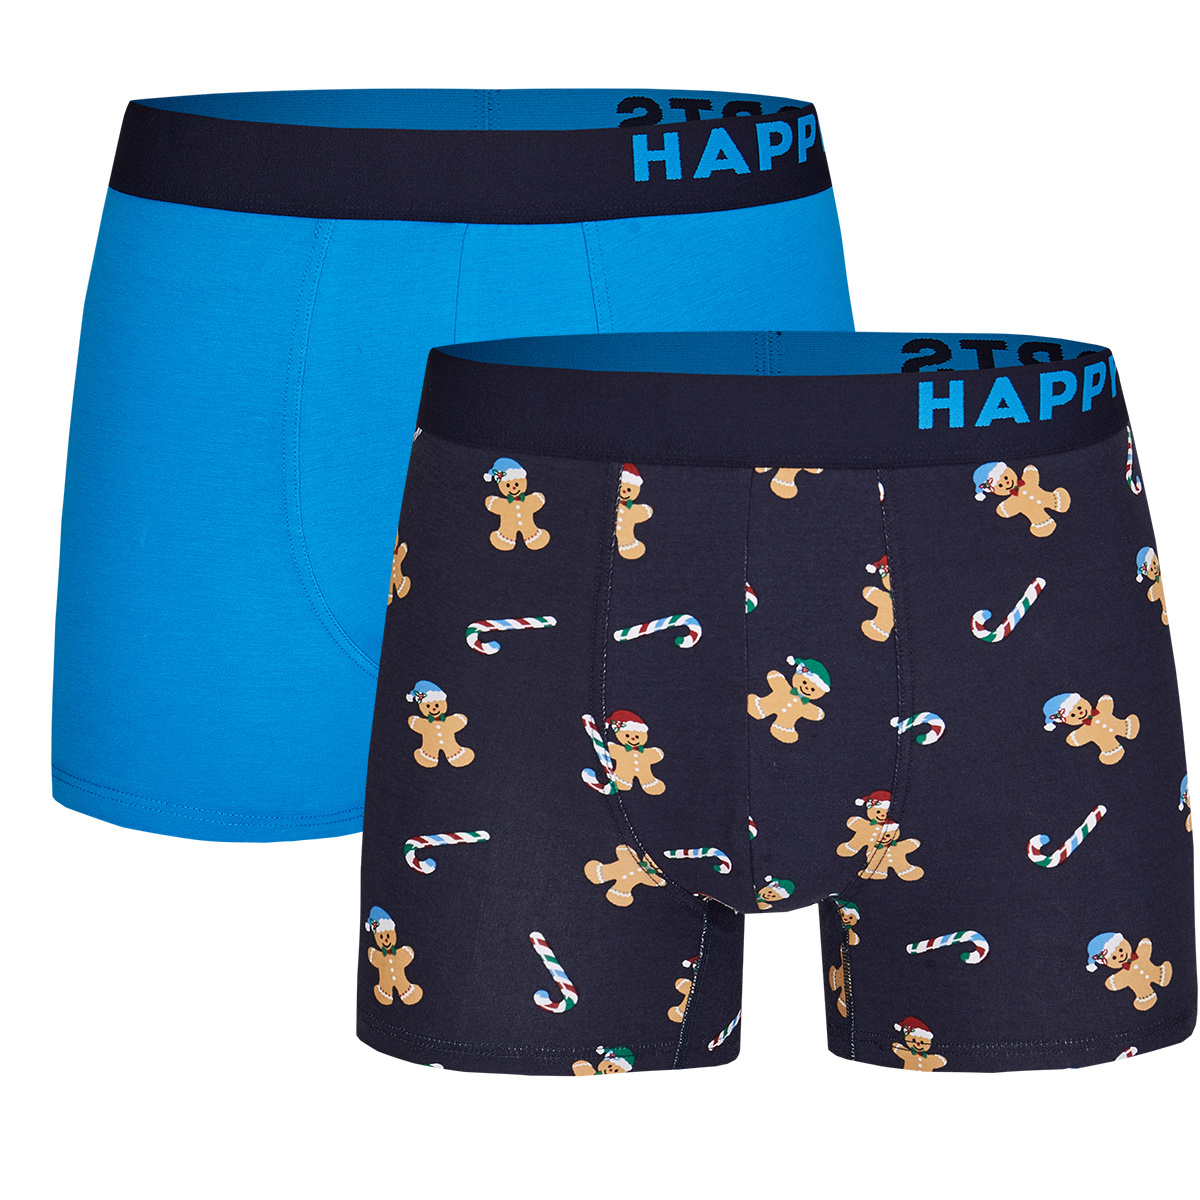 Afbeelding van Happy Shorts 2-pack kerst boxershorts heren gingerbread man